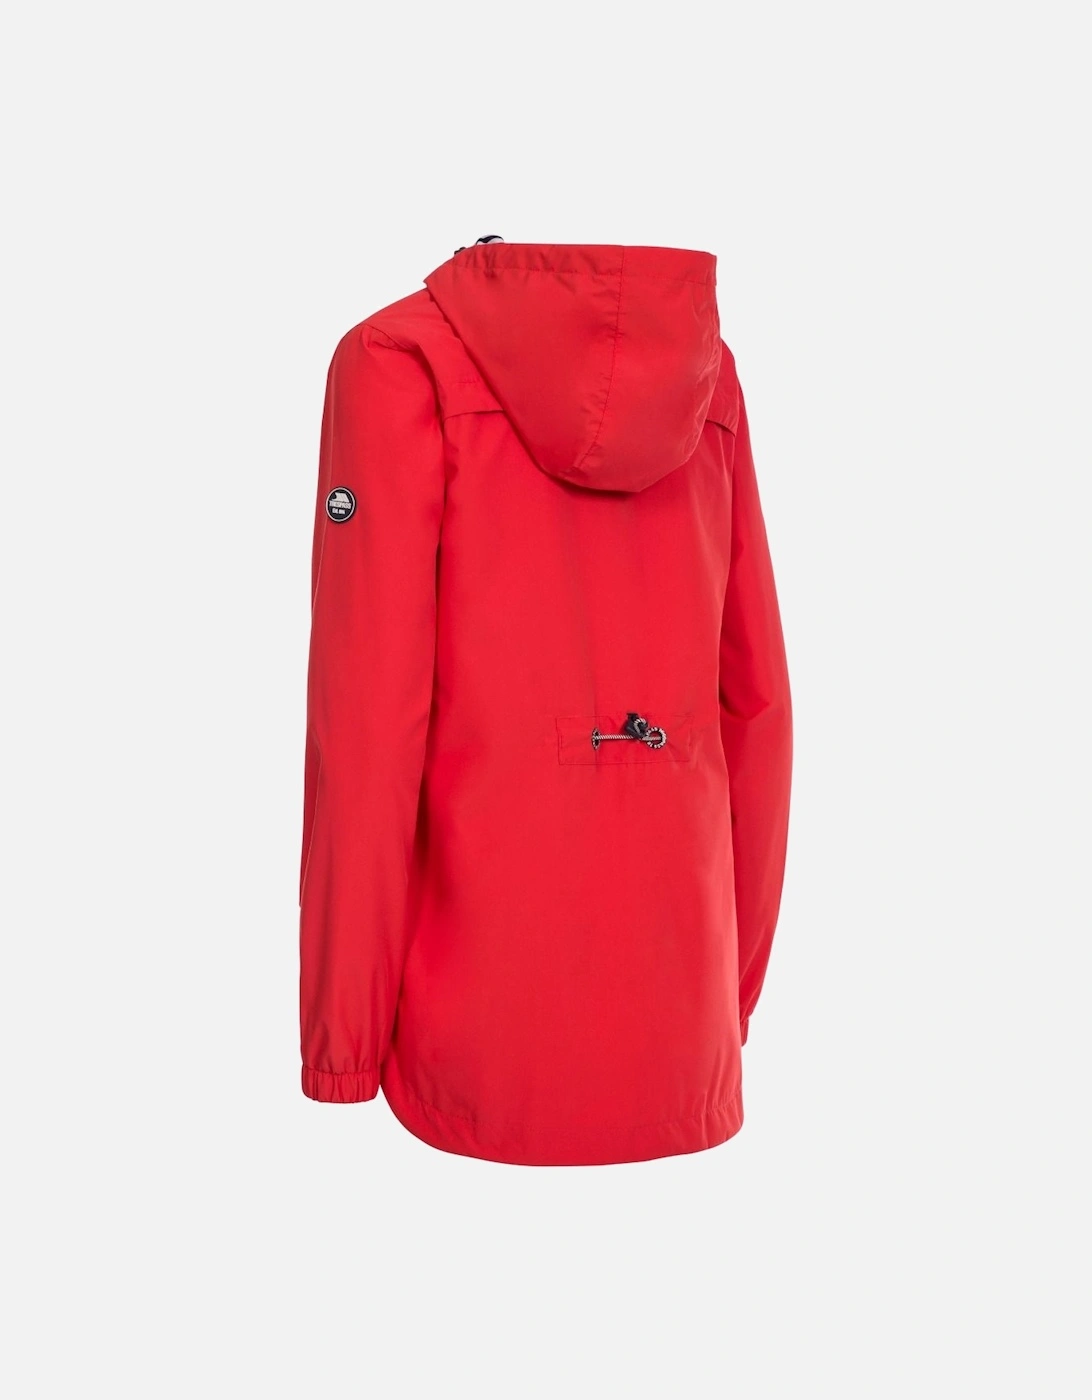 Womens/Ladies Flourish Waterproof Jacket